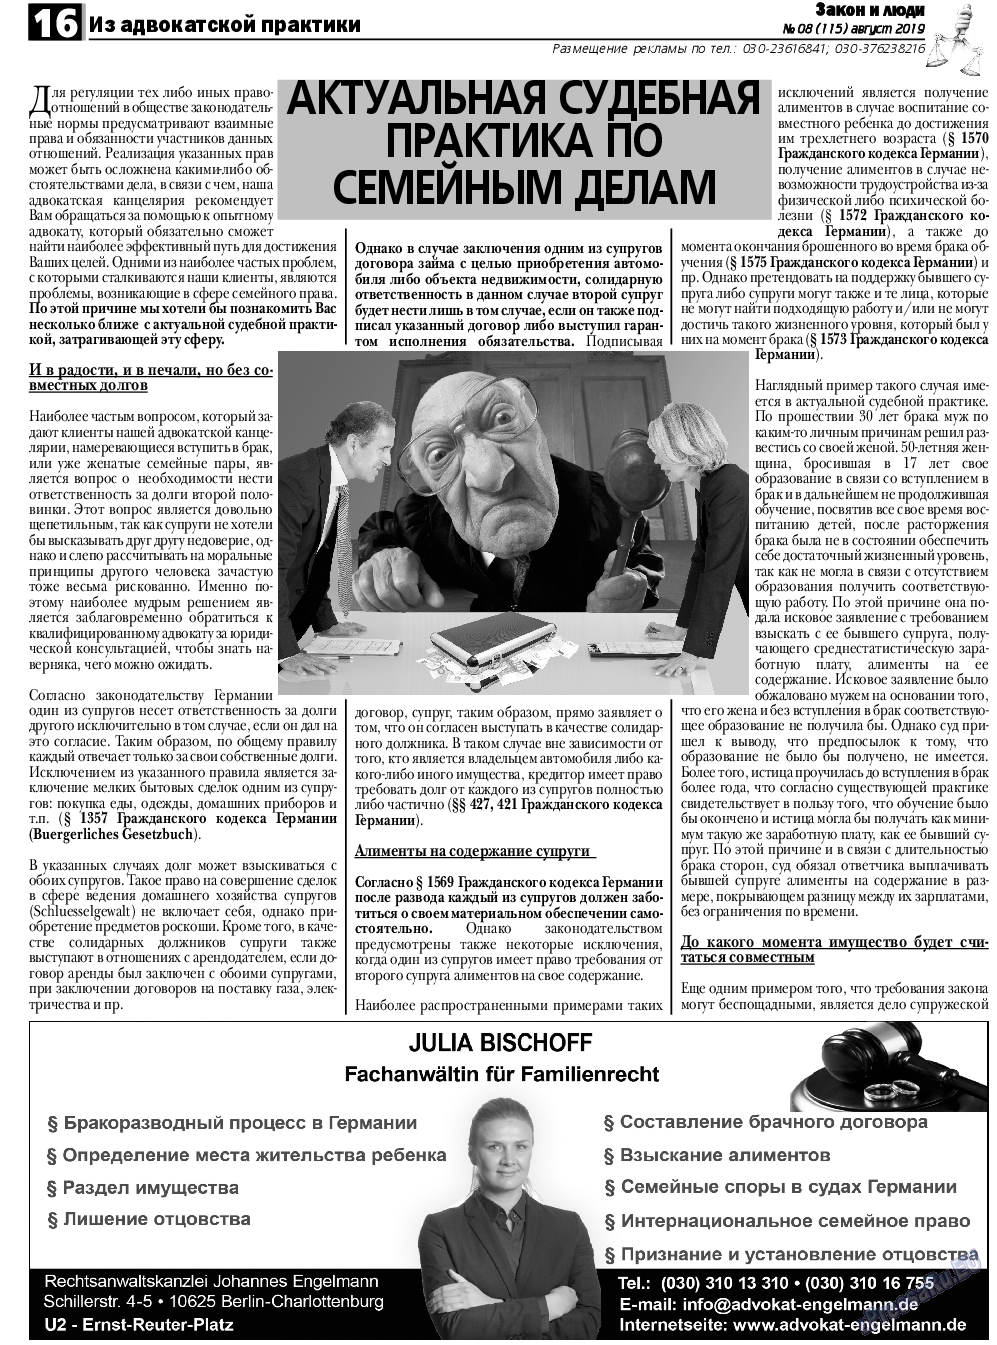 Закон и люди, газета. 2019 №8 стр.16